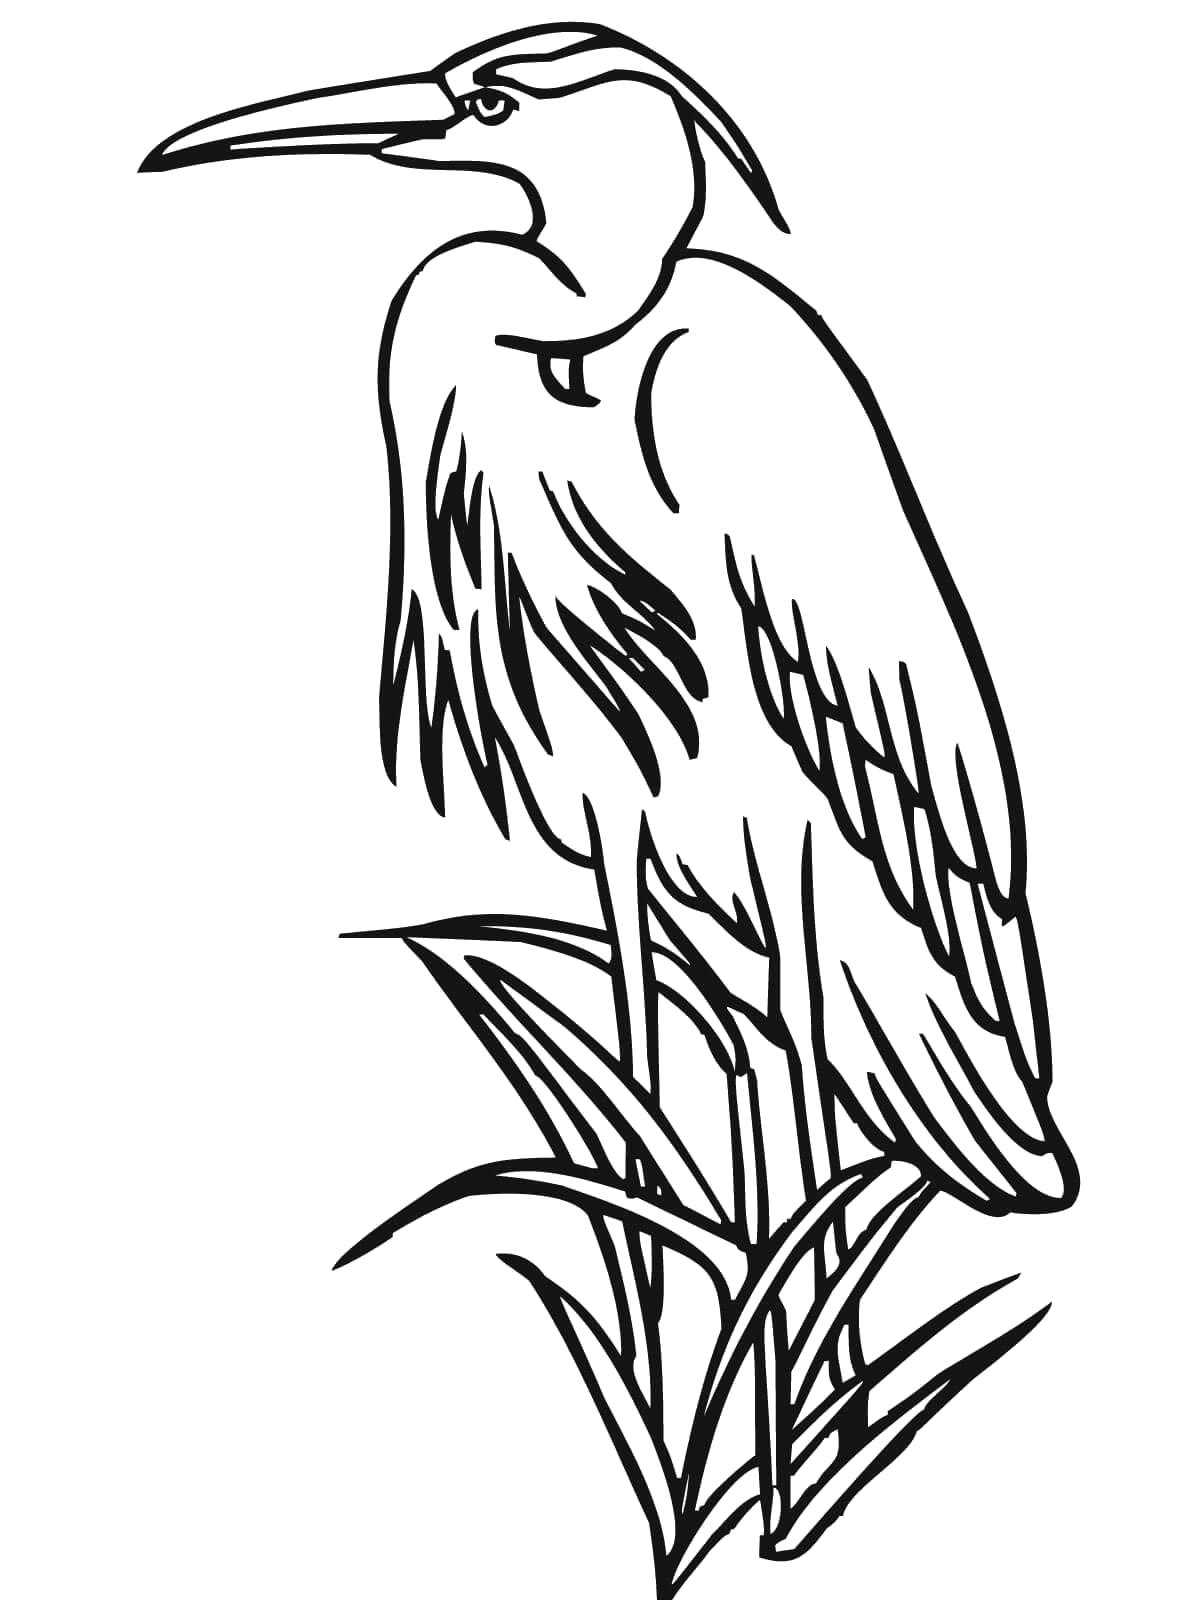 Название: Раскраска Цапля в траве. Категория: Контуры для вырезания птиц. Теги: цапля, трава.